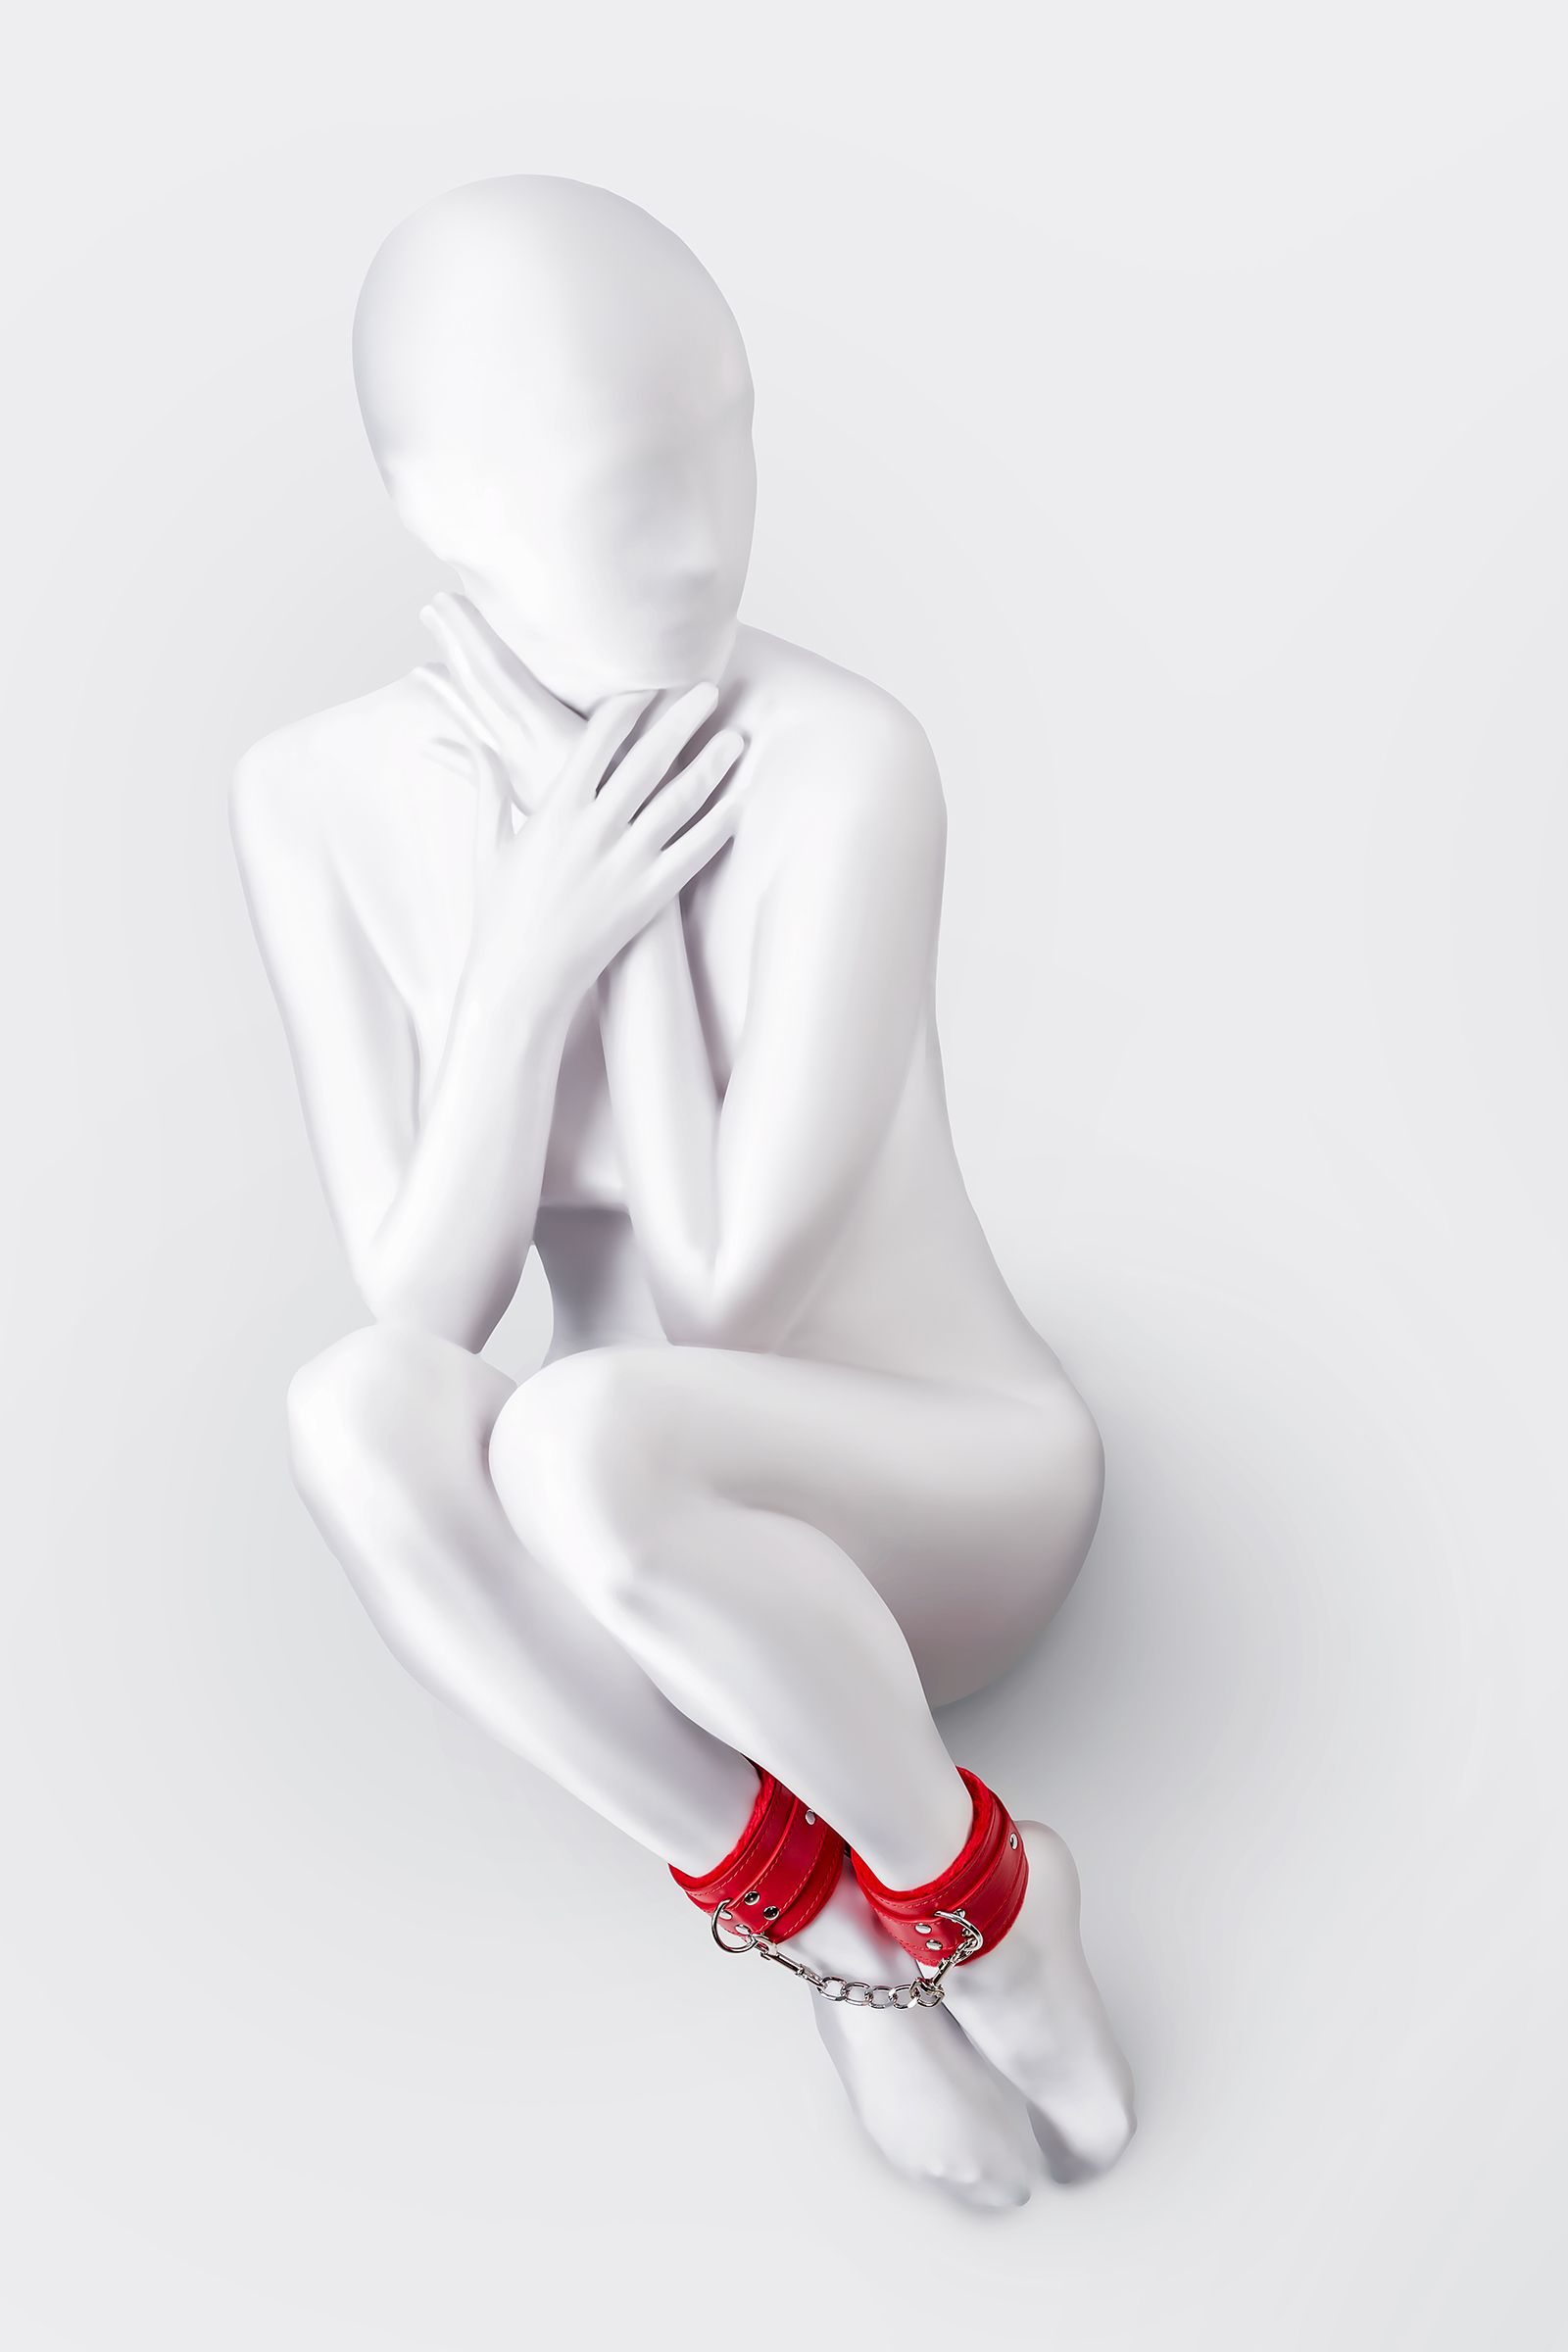 Наножники Anonymo by Toyfа с клепками и мягкой подкладкой, красные